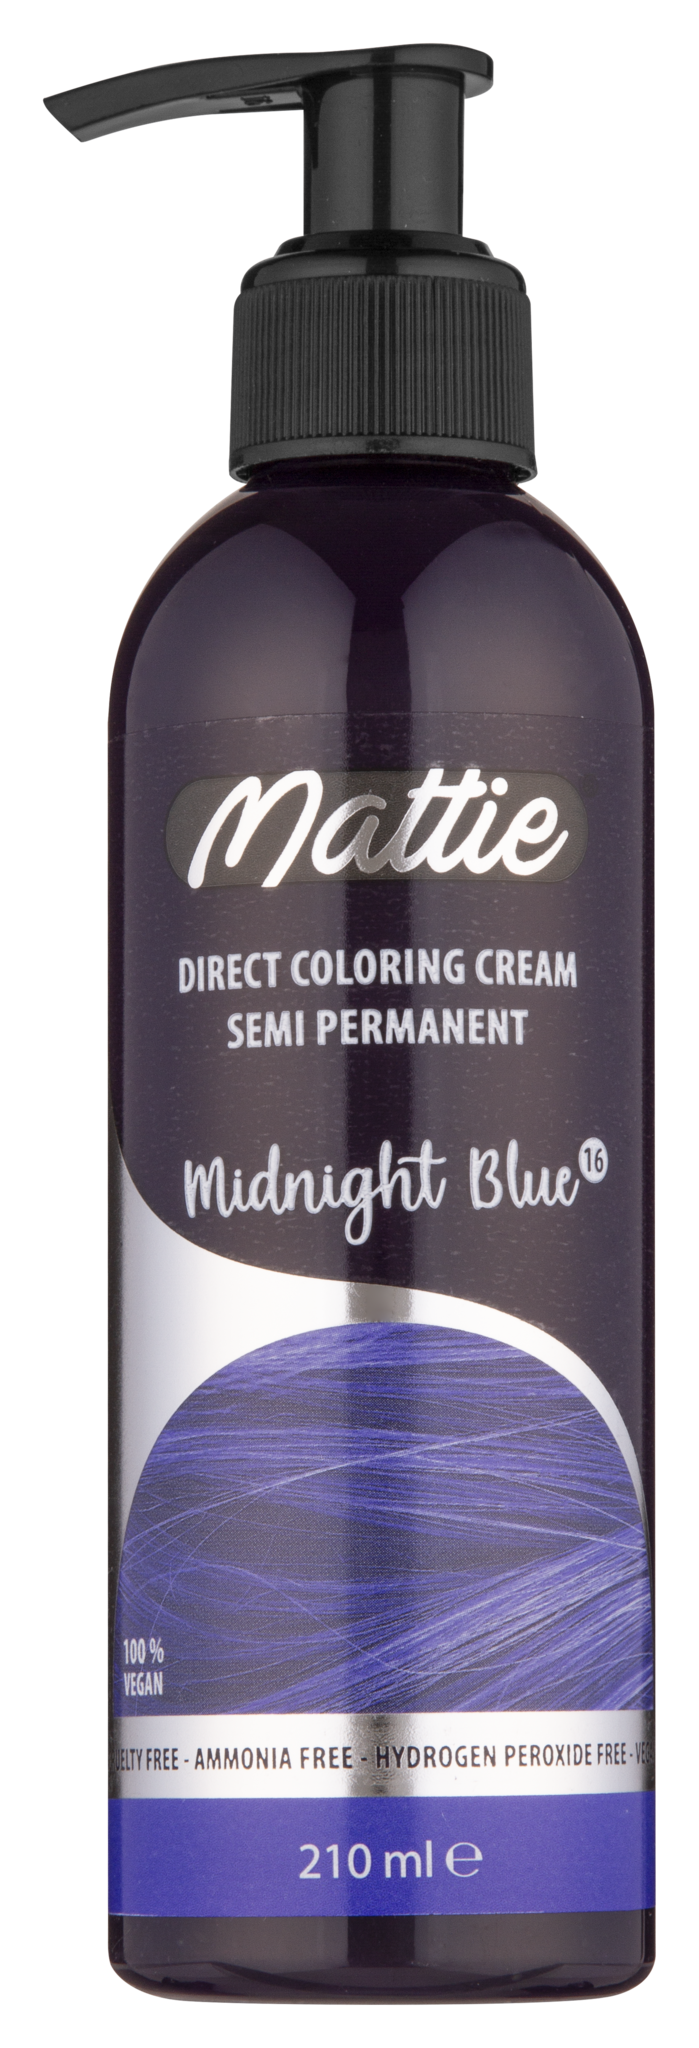 Mattie Direct Coloring Cream Semi-Permanent - Midnight Blue 210ml